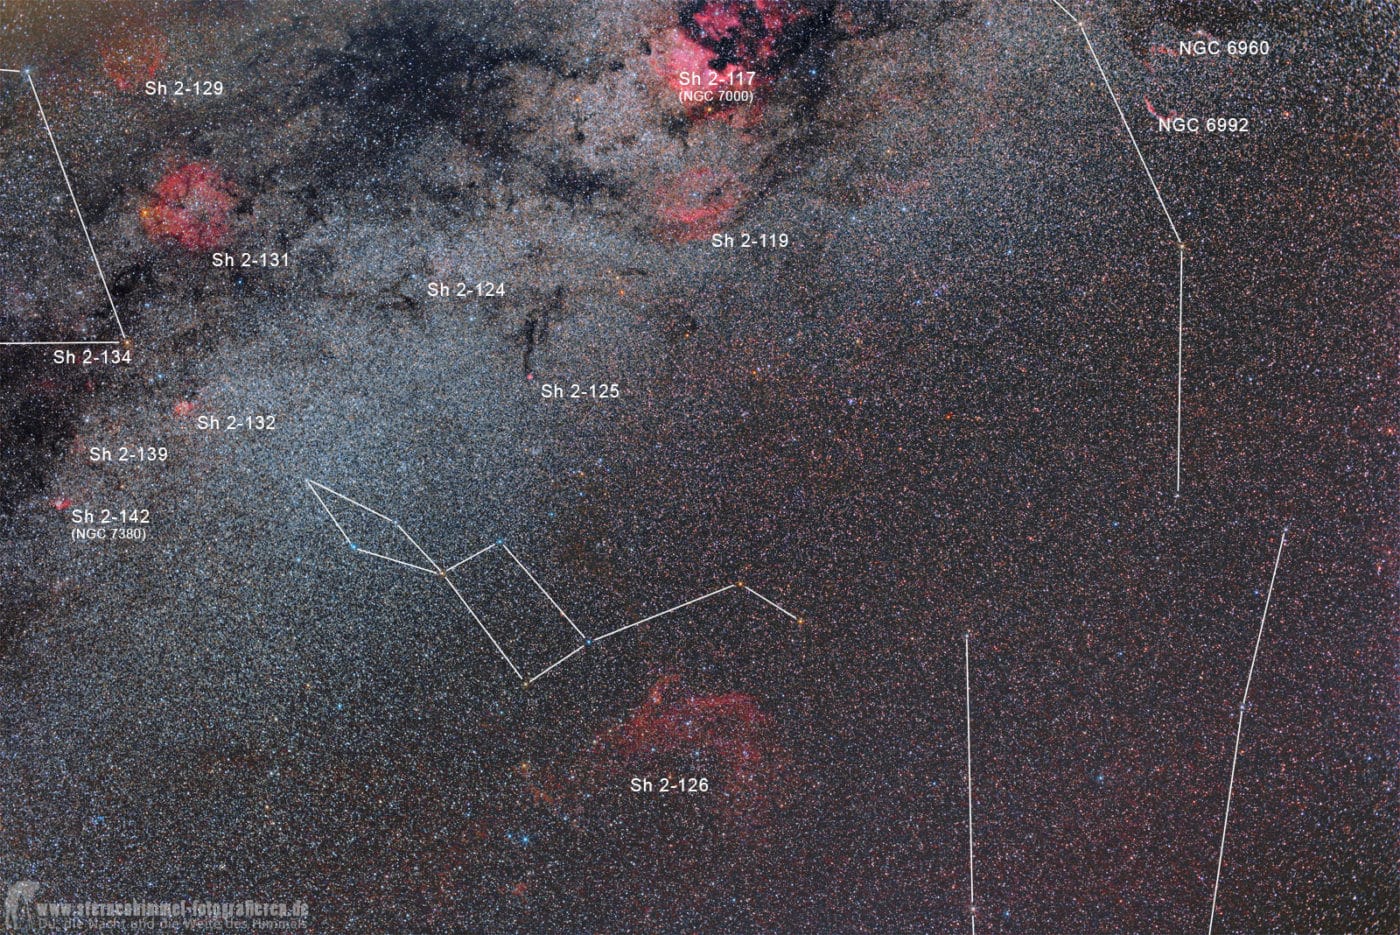 Herbsthimmel - Sternbild Eidechse, Lacerta, Sharpless 126, Sh2-126